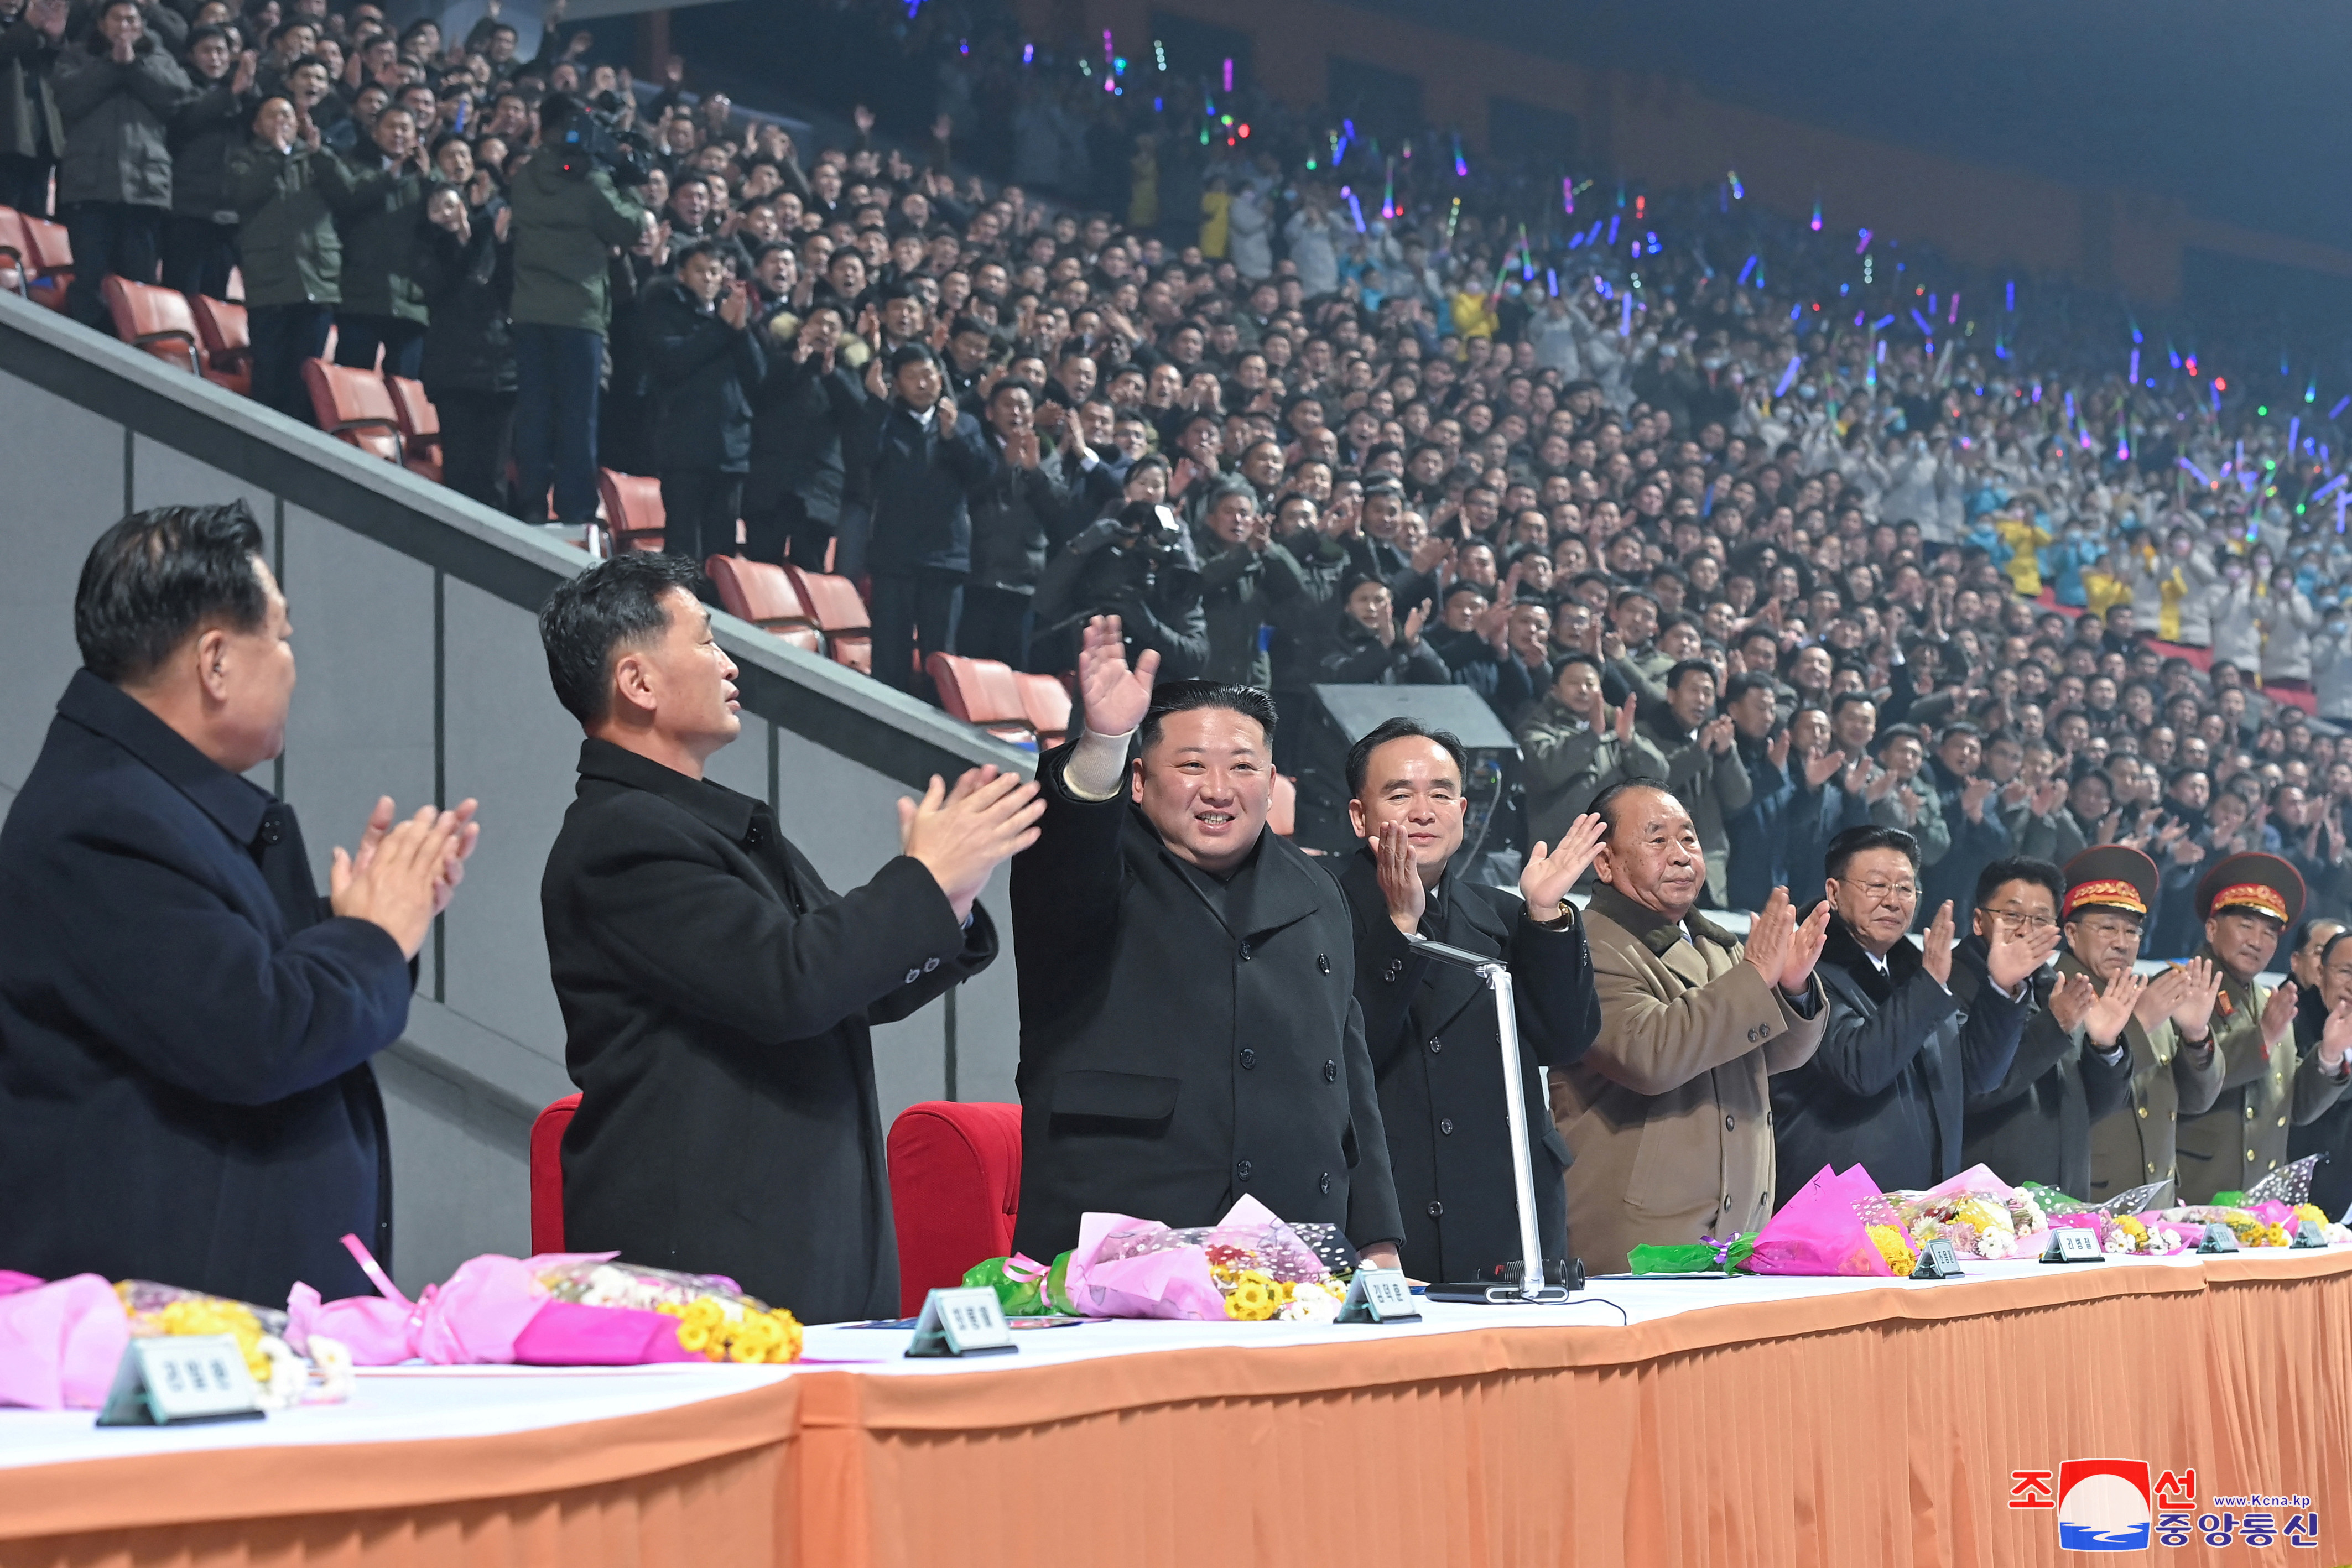 El líder norcoreano, Kim Jong Un, asiste a un evento durante las celebraciones de Año Nuevo en el Palacio de la Cultura del Pueblo en Pyongyang, Corea del Norte, en esta foto publicada el 1 de enero de 2023 por la Agencia Central de Noticias de Corea del Norte (KCNA).
